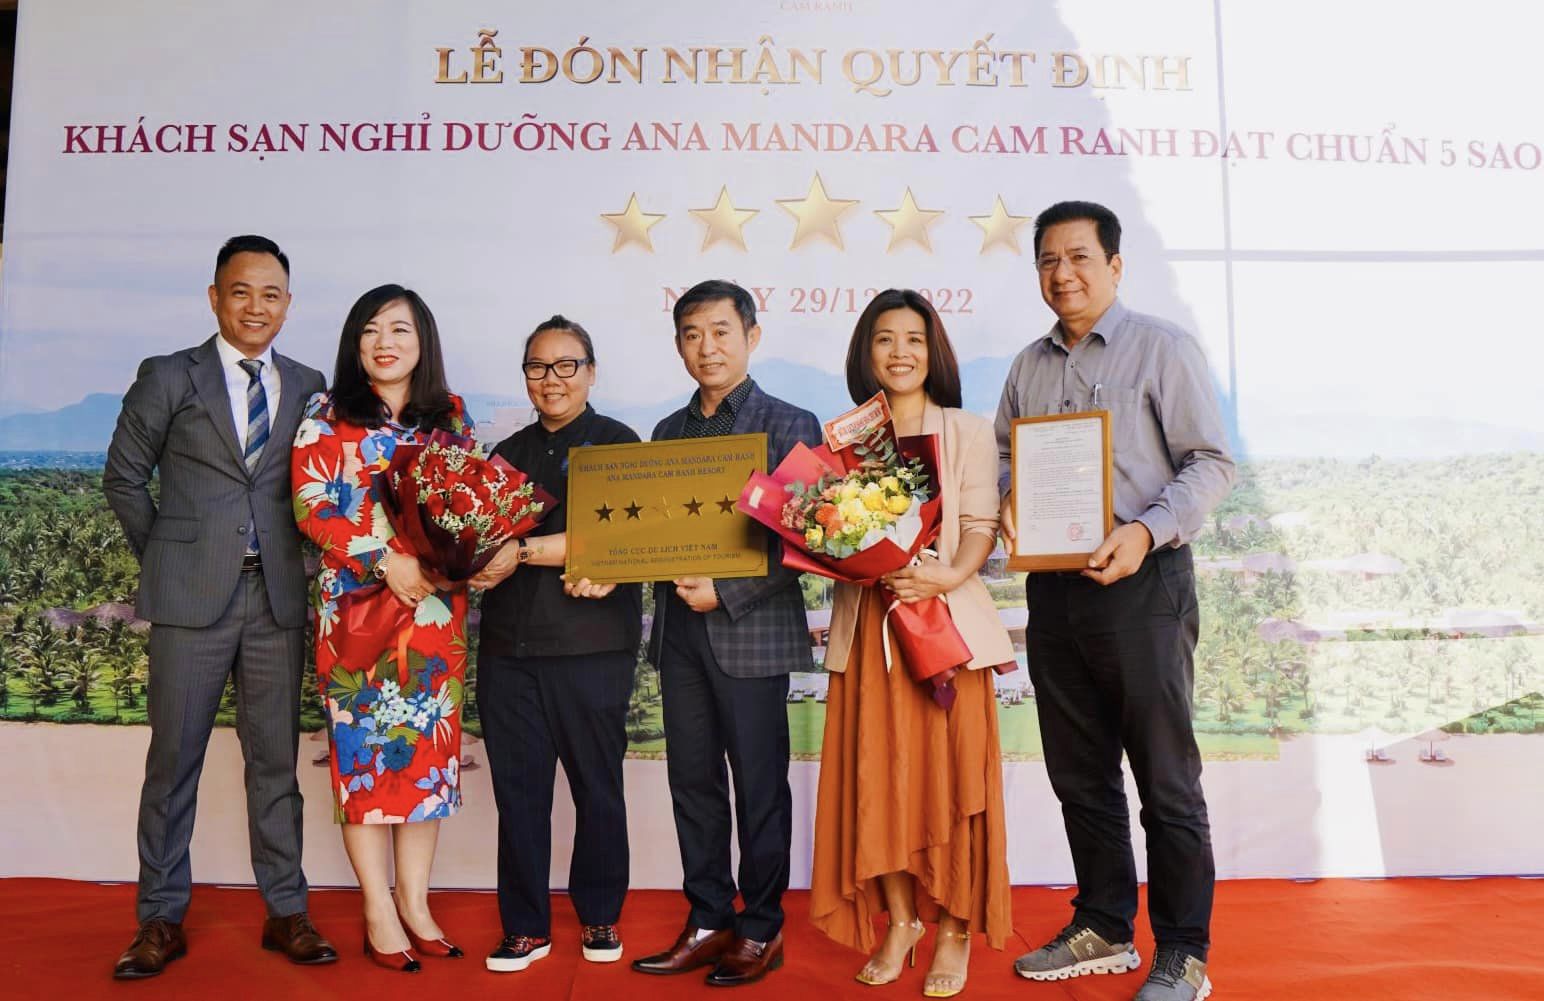 Lãnh đạo Sở Du lịch trao chứng nhận cơ sở lưu trú tiêu chuẩn 5 sao cho đại diện Khu nghỉ dưỡng Ana Mandara Cam Ranh